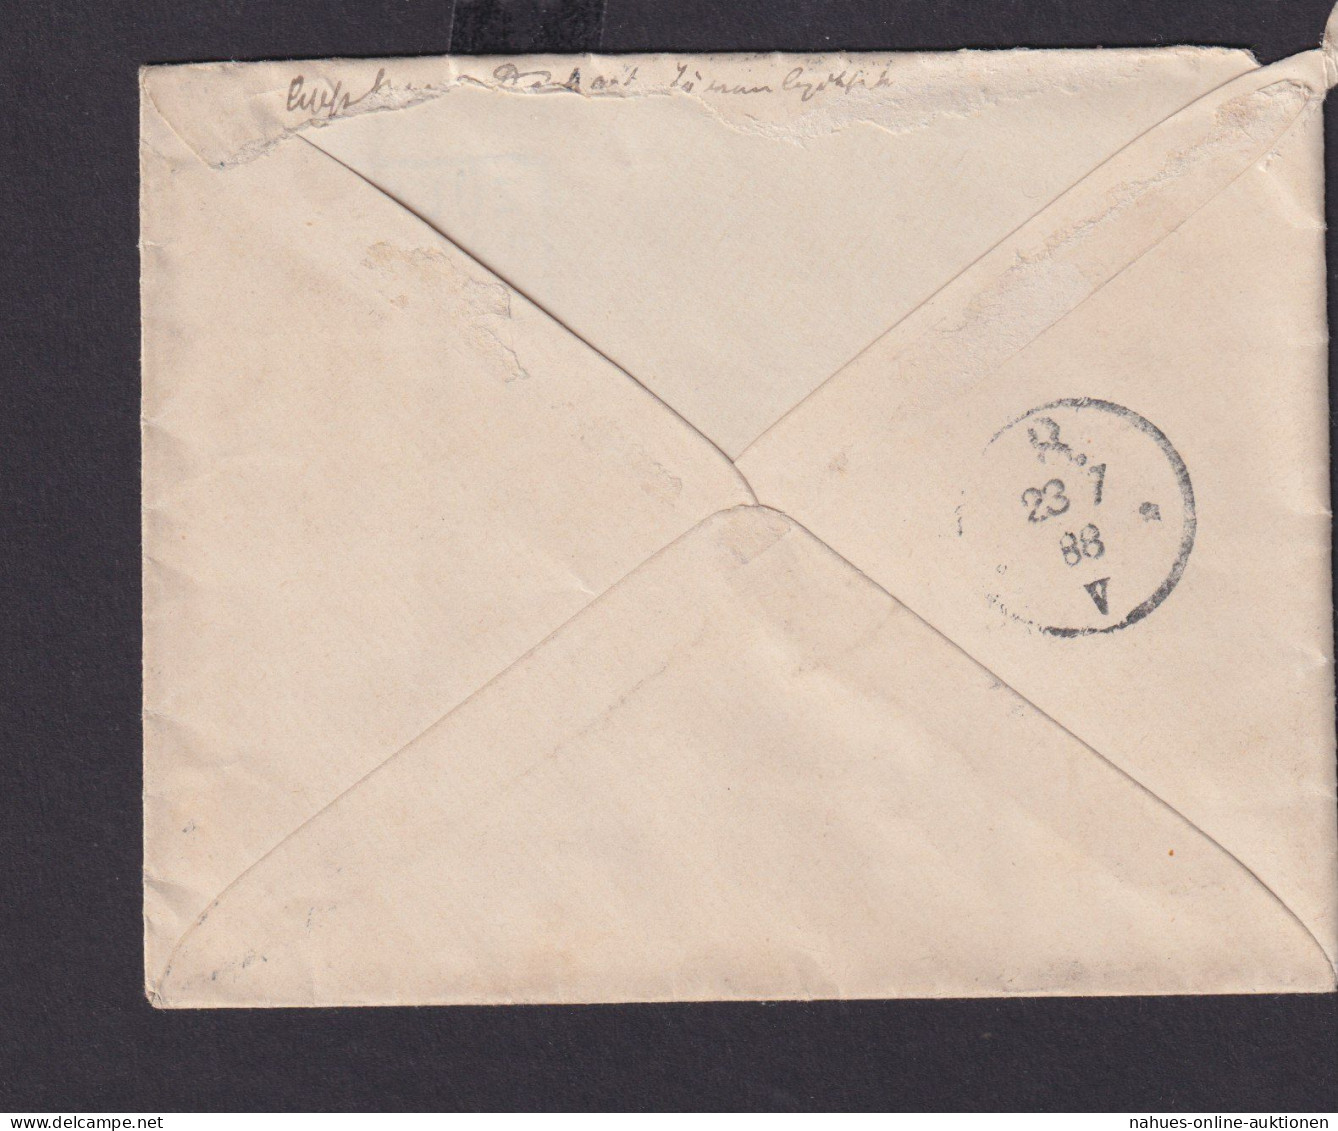 Deutsches Reich Brief Ef Pfg. R3 Züllichau R.B. FRANKFURT A.O. Nach Berlin - Brieven En Documenten